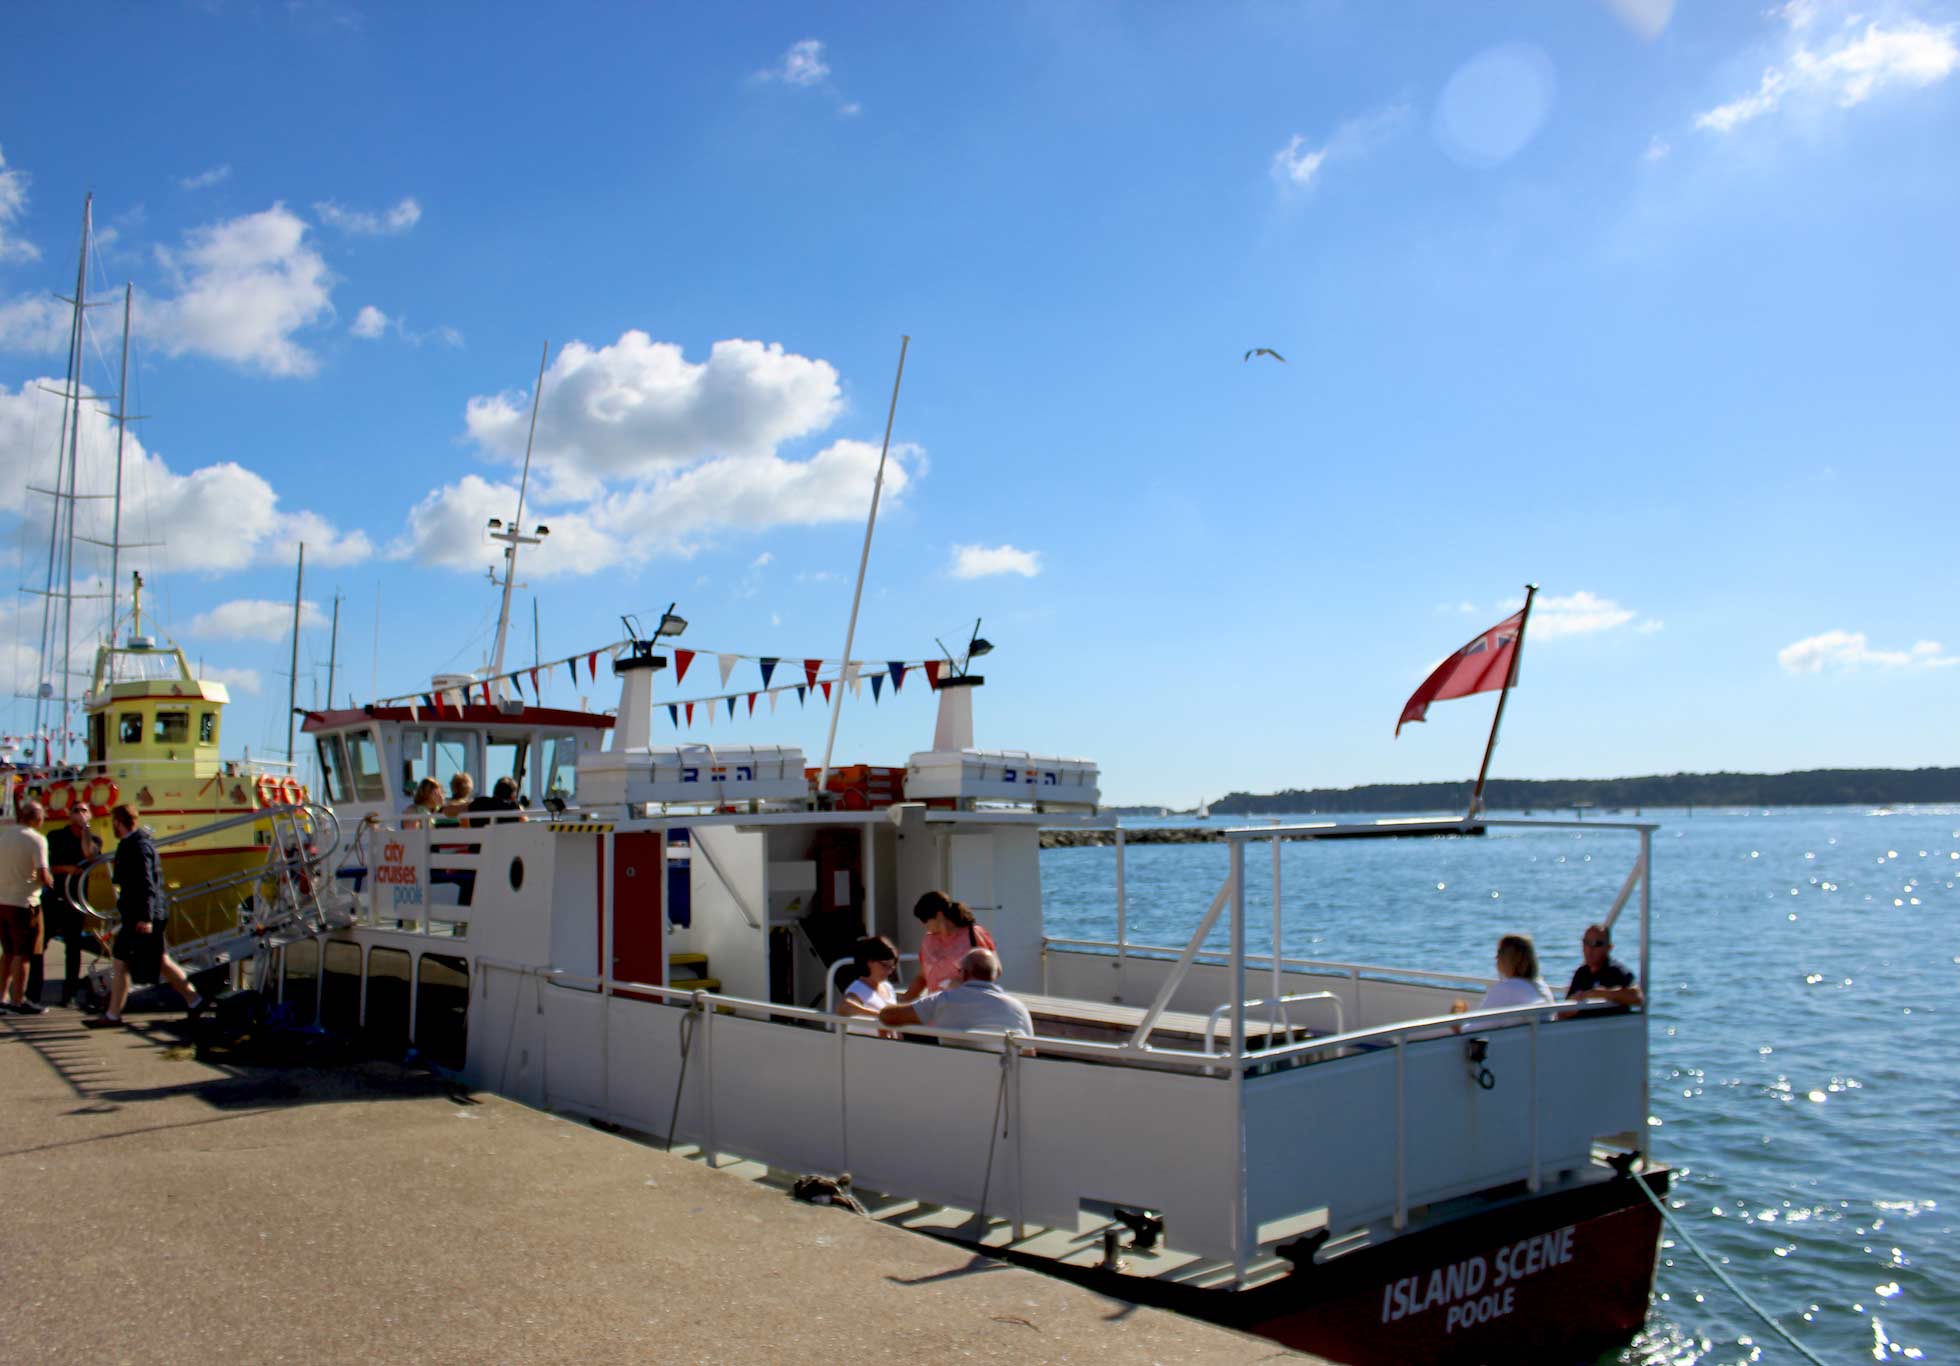 Island Scene un pequeño barco atracado en Poole con gente sentada en la cubierta.